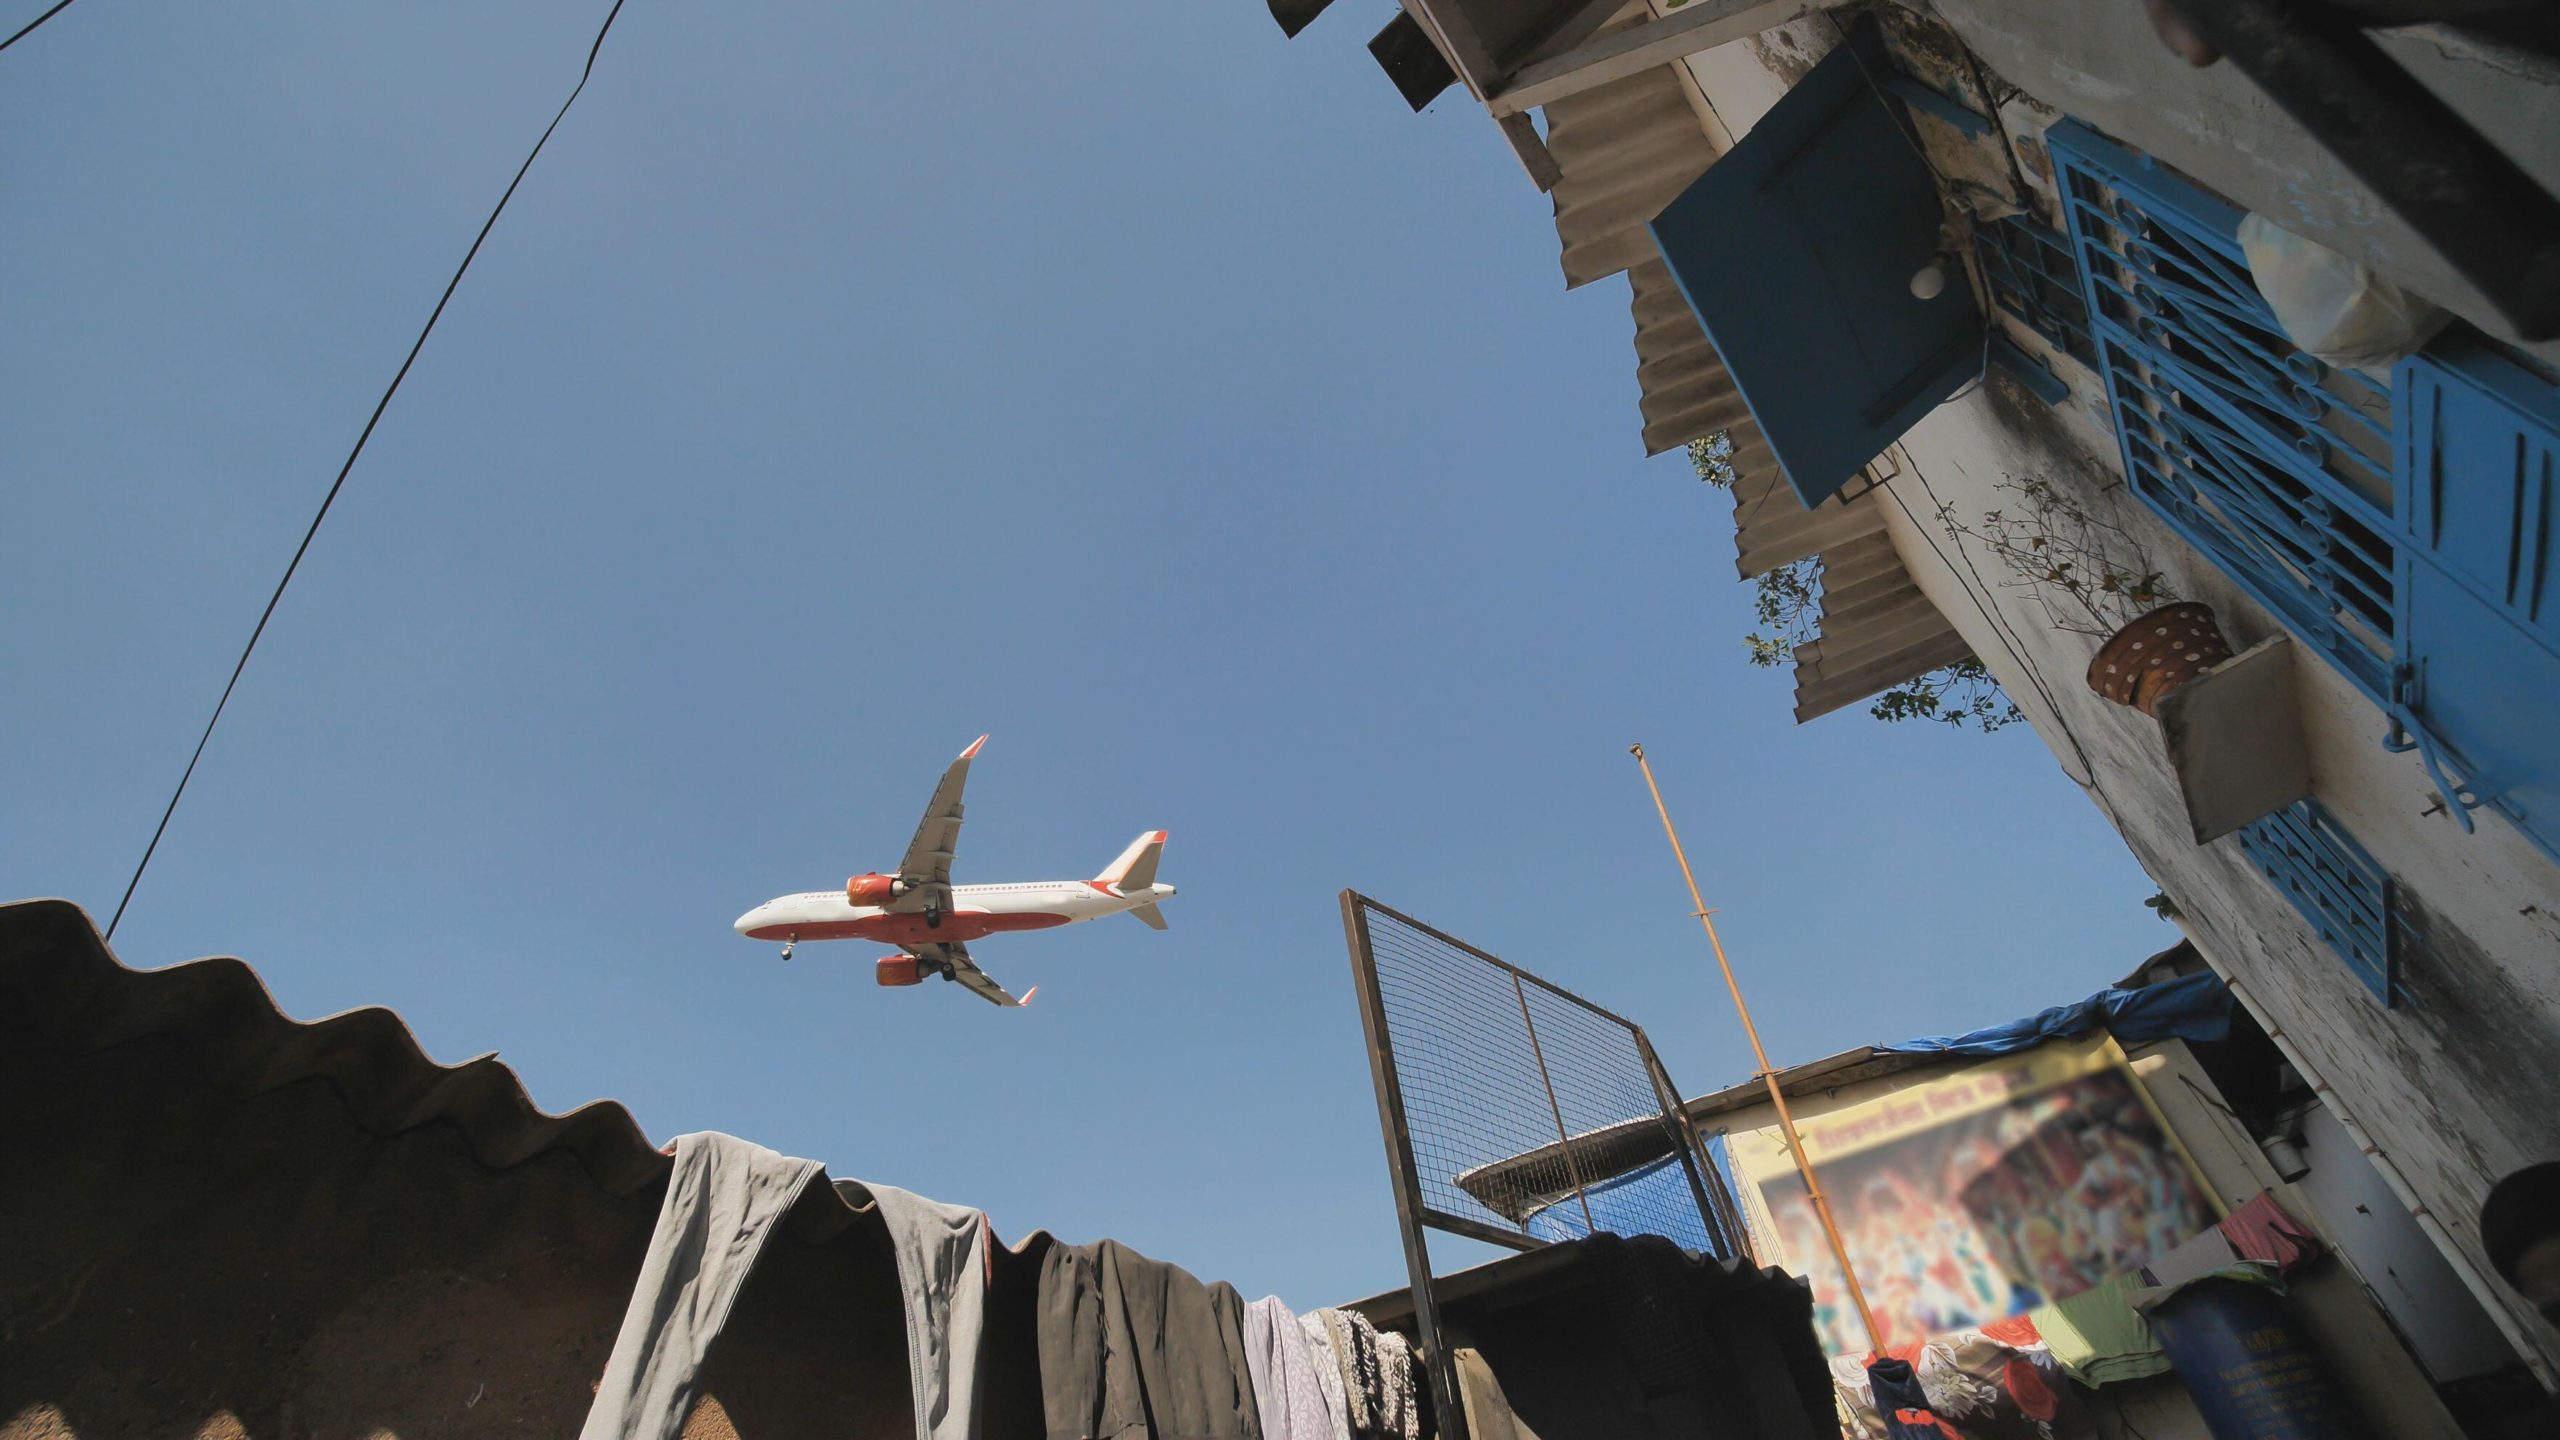 A plane flying over Mumbai, India